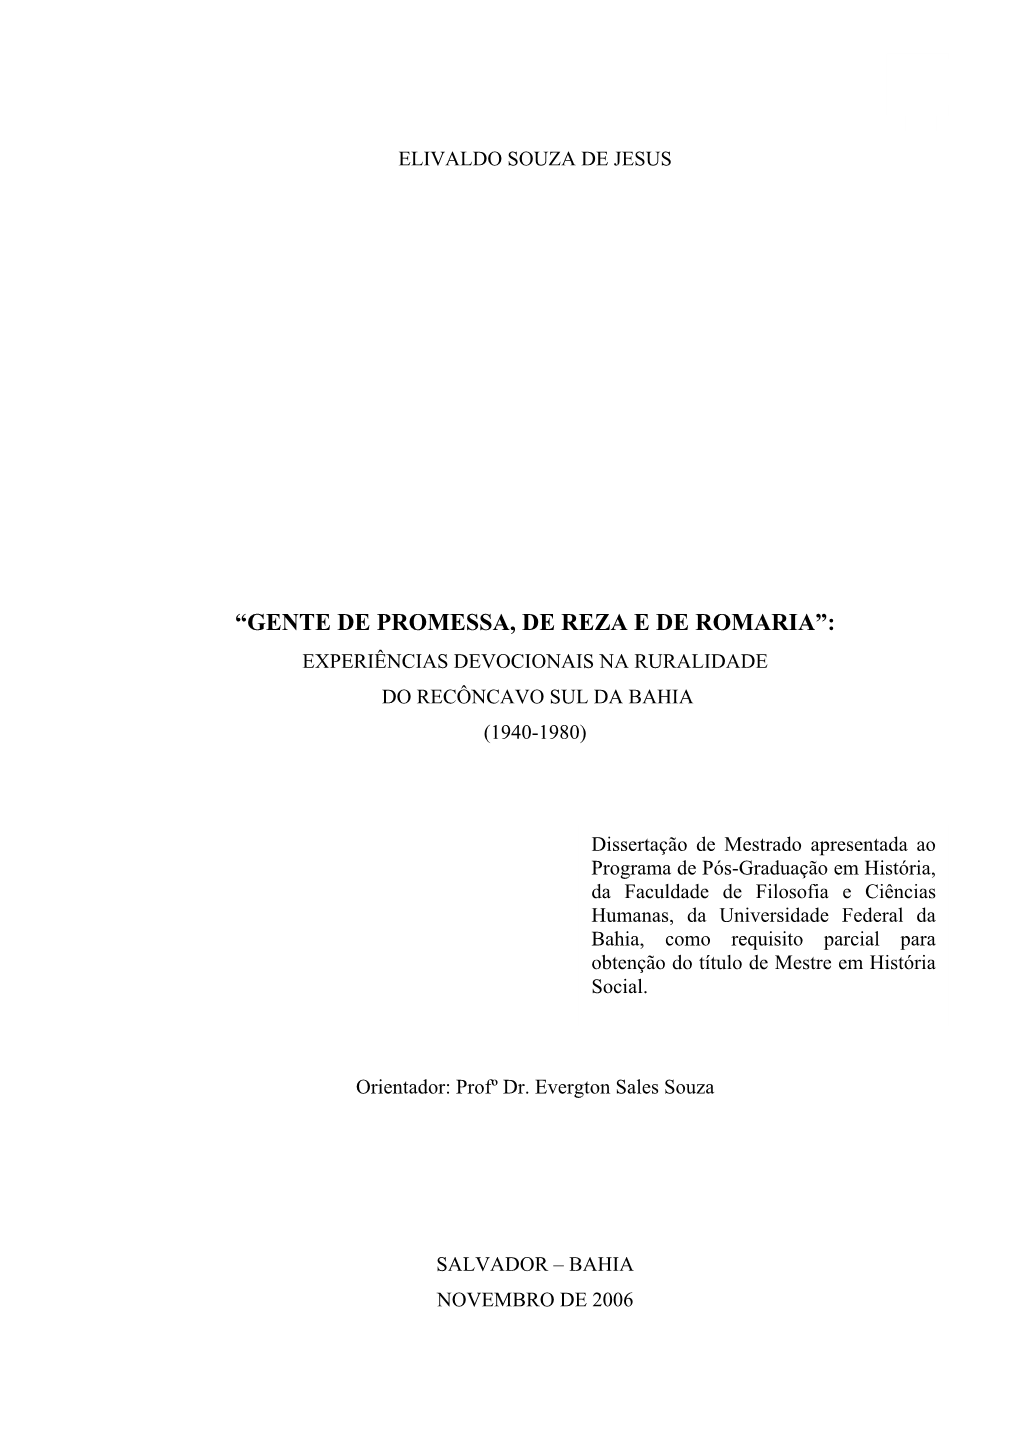 “Gente De Promessa, De Reza E De Romaria”: Experiências Devocionais Na Ruralidade Do Recôncavo Sul Da Bahia (1940-1980)